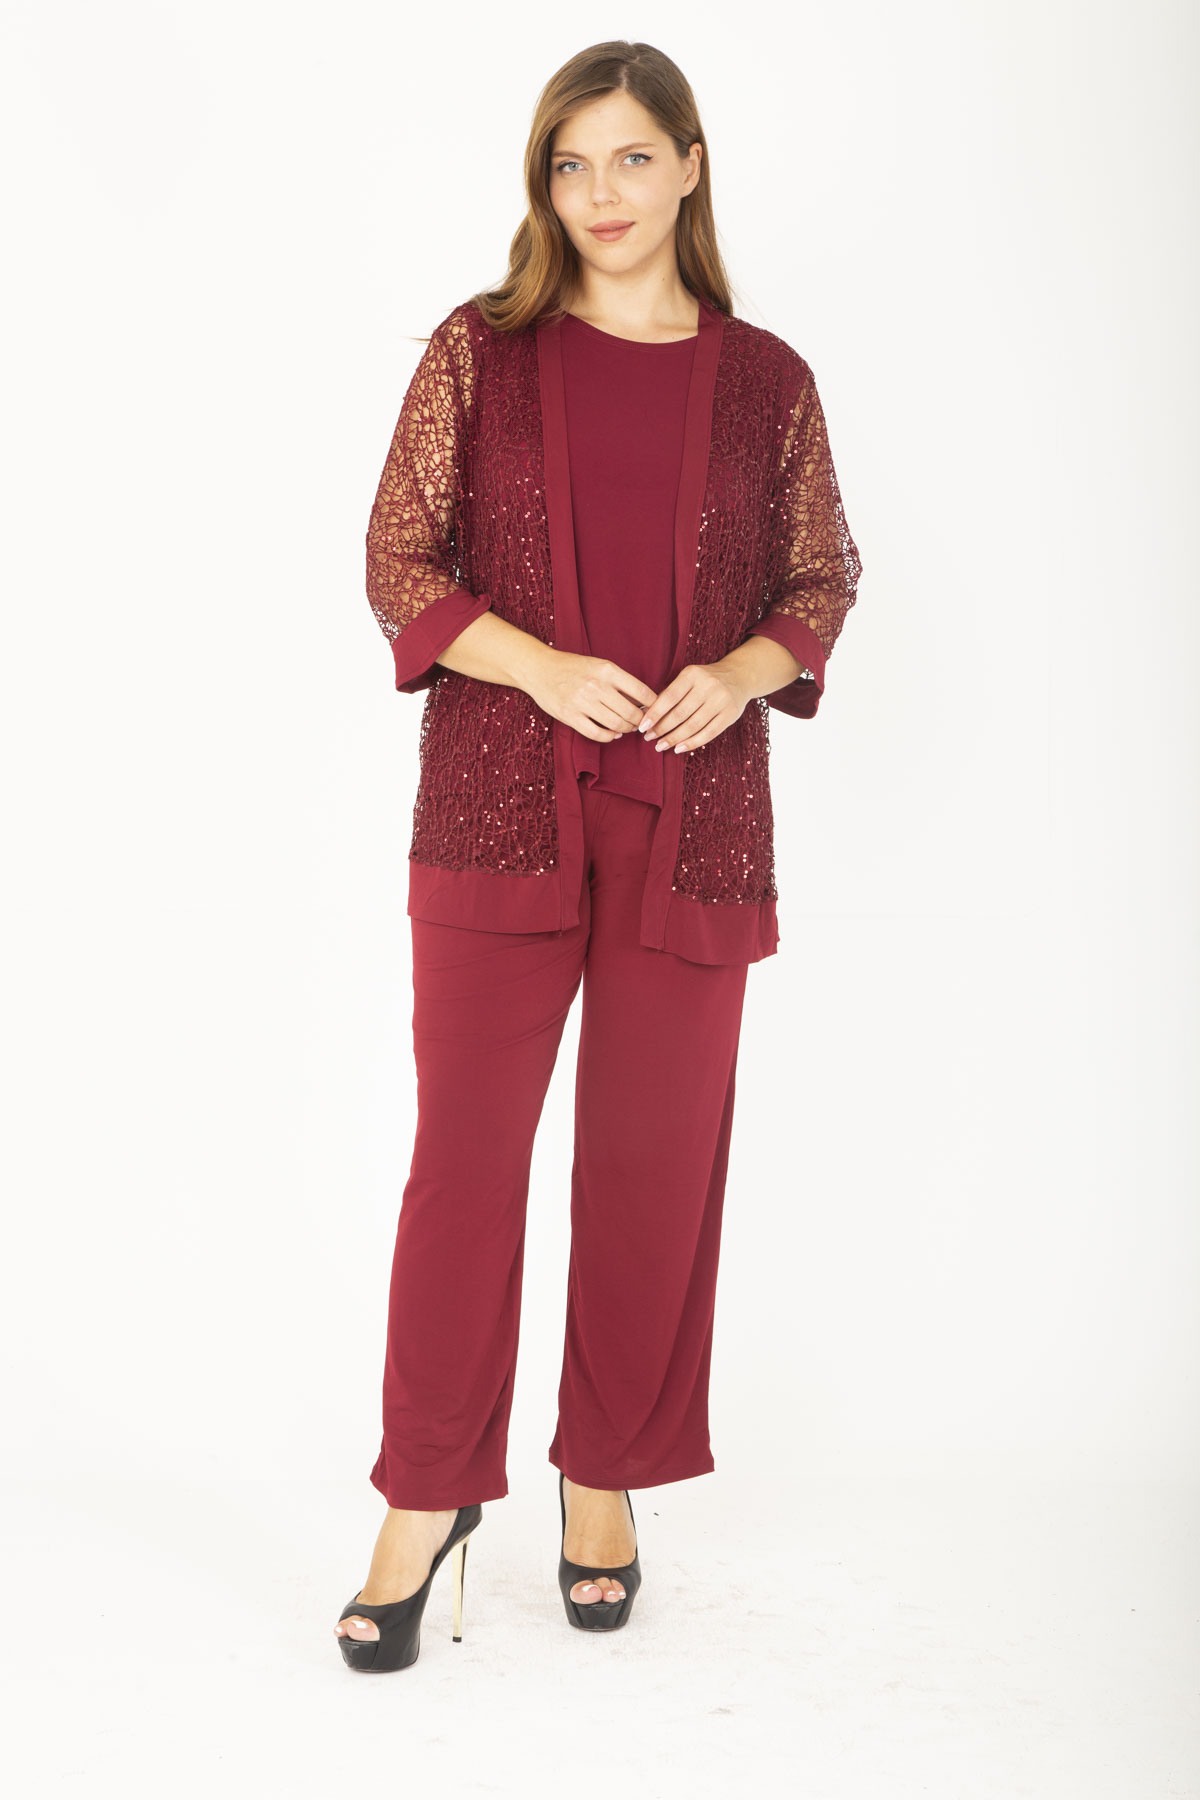 Şans Women's Plus Size Claret Red Lace Cardigan Set, 3 Pieces With Blouse And Pants